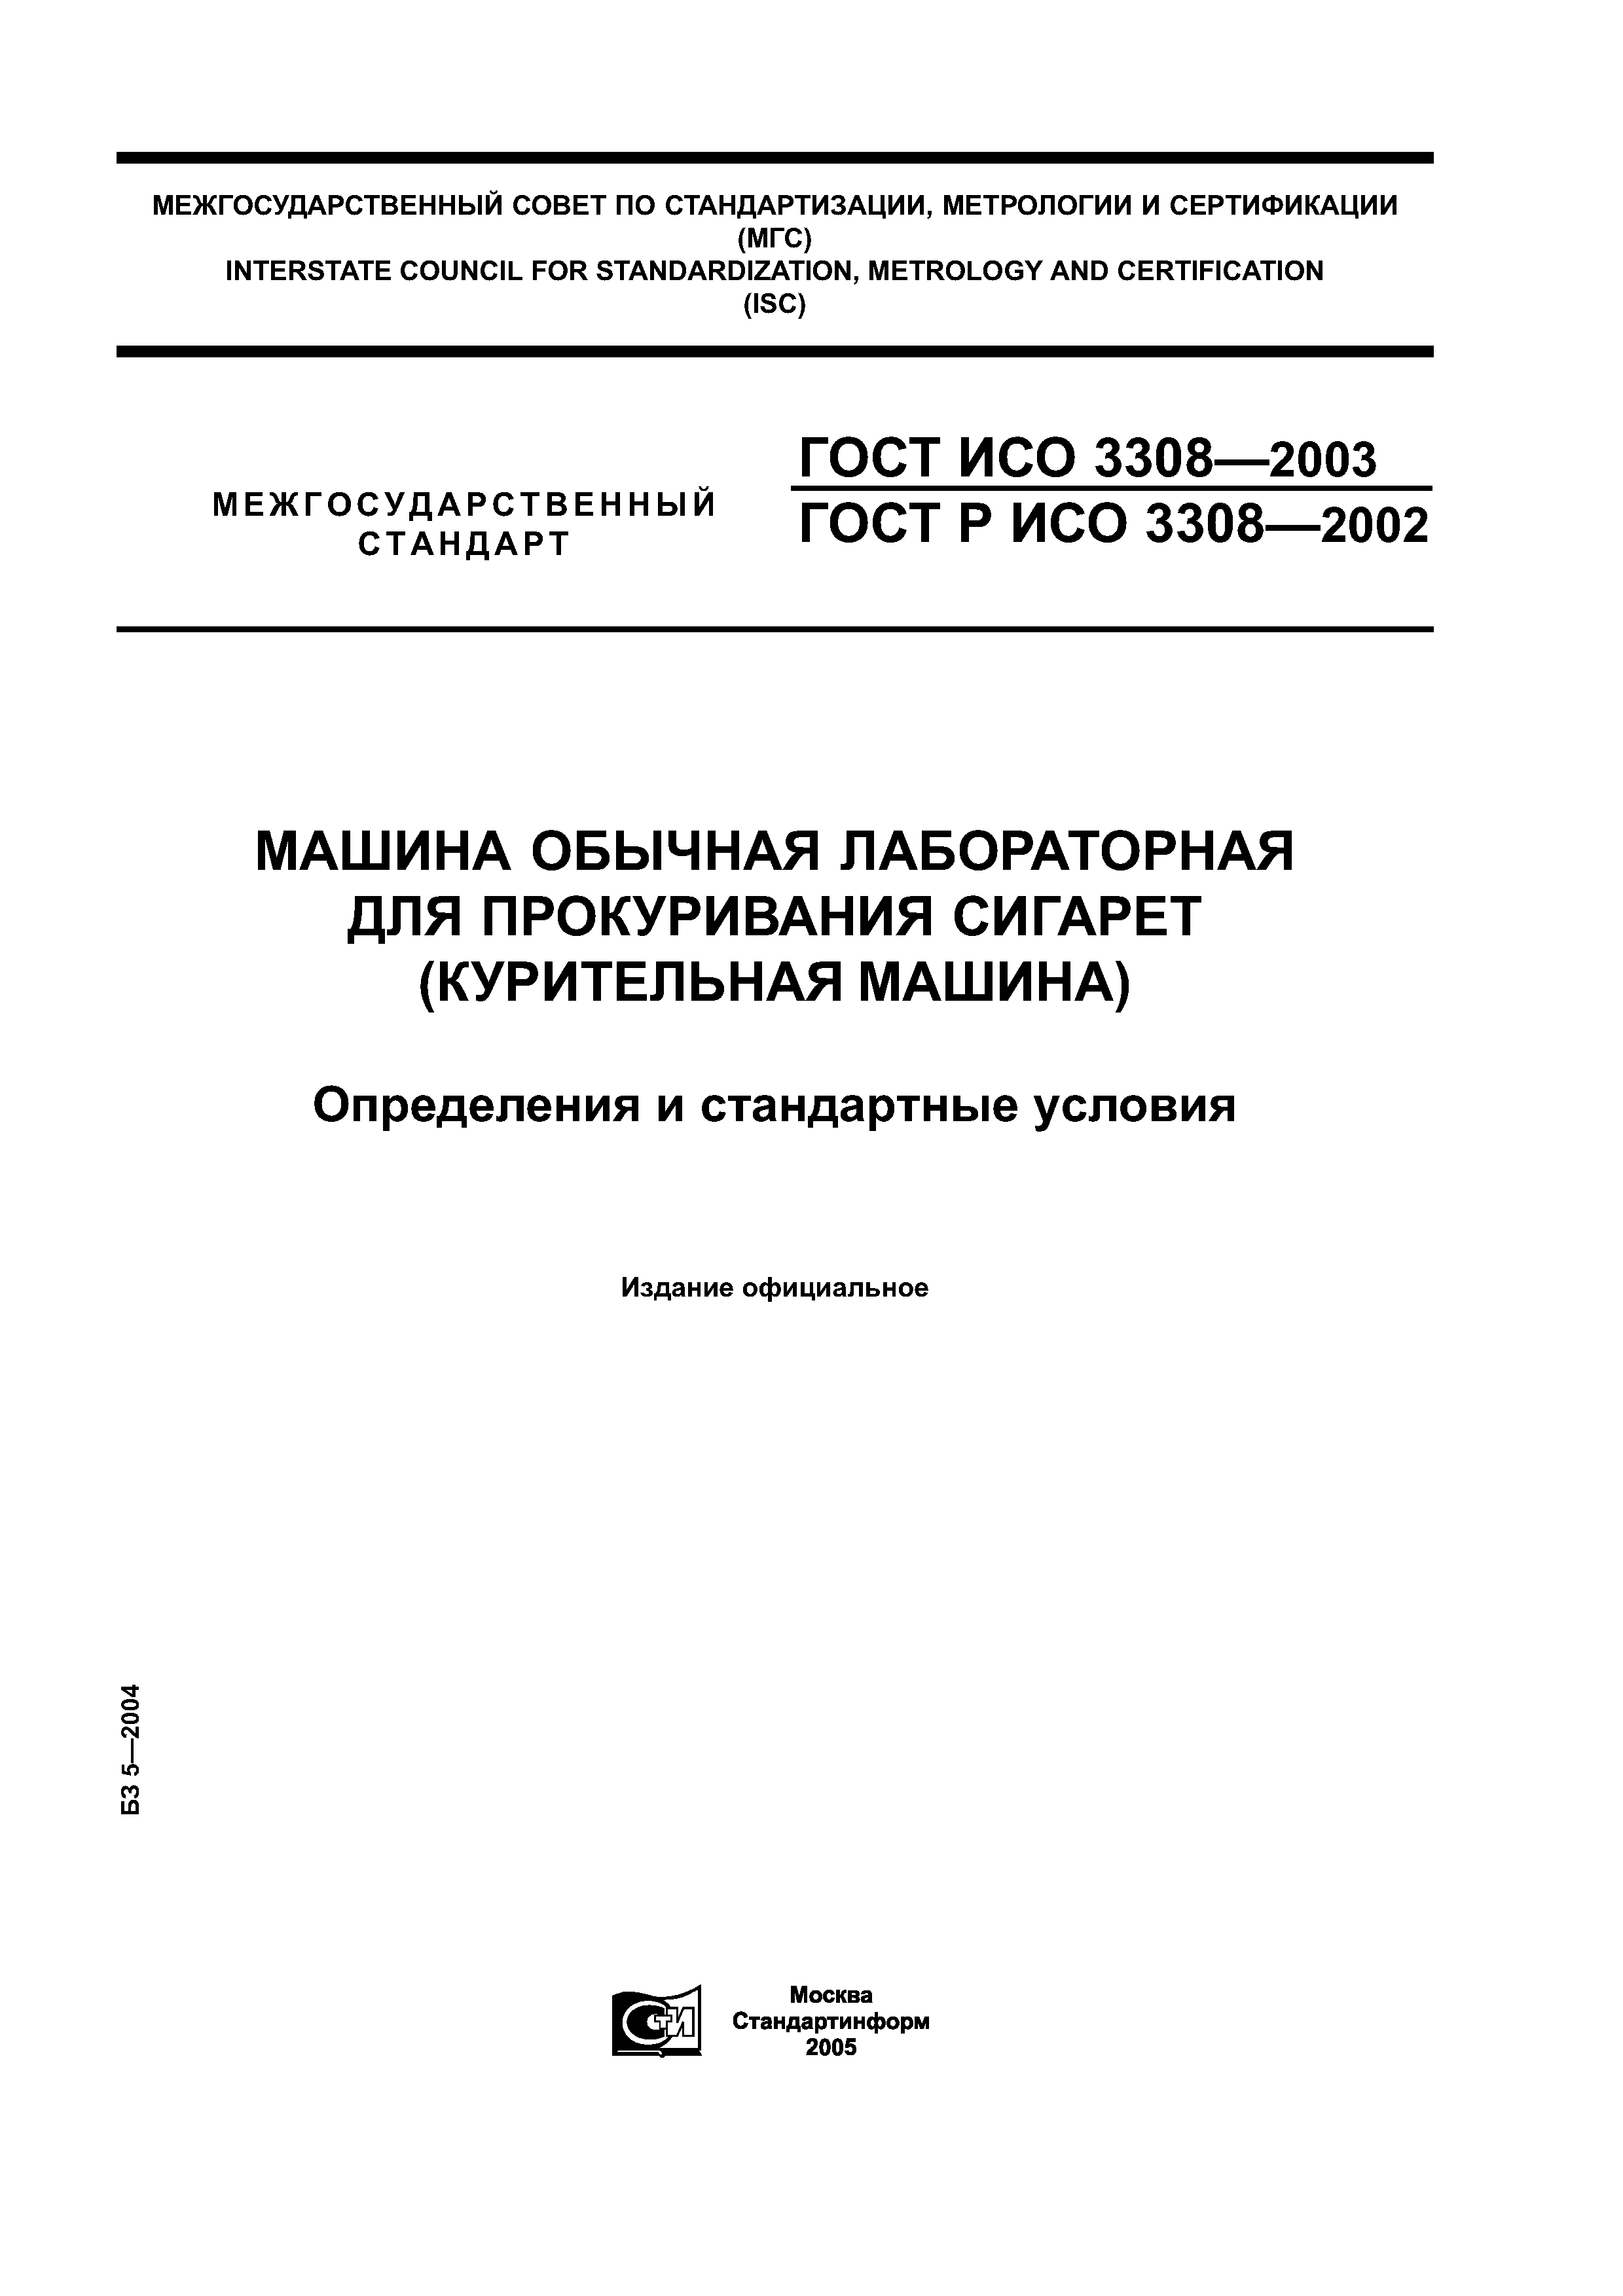 ГОСТ ИСО 3308-2003